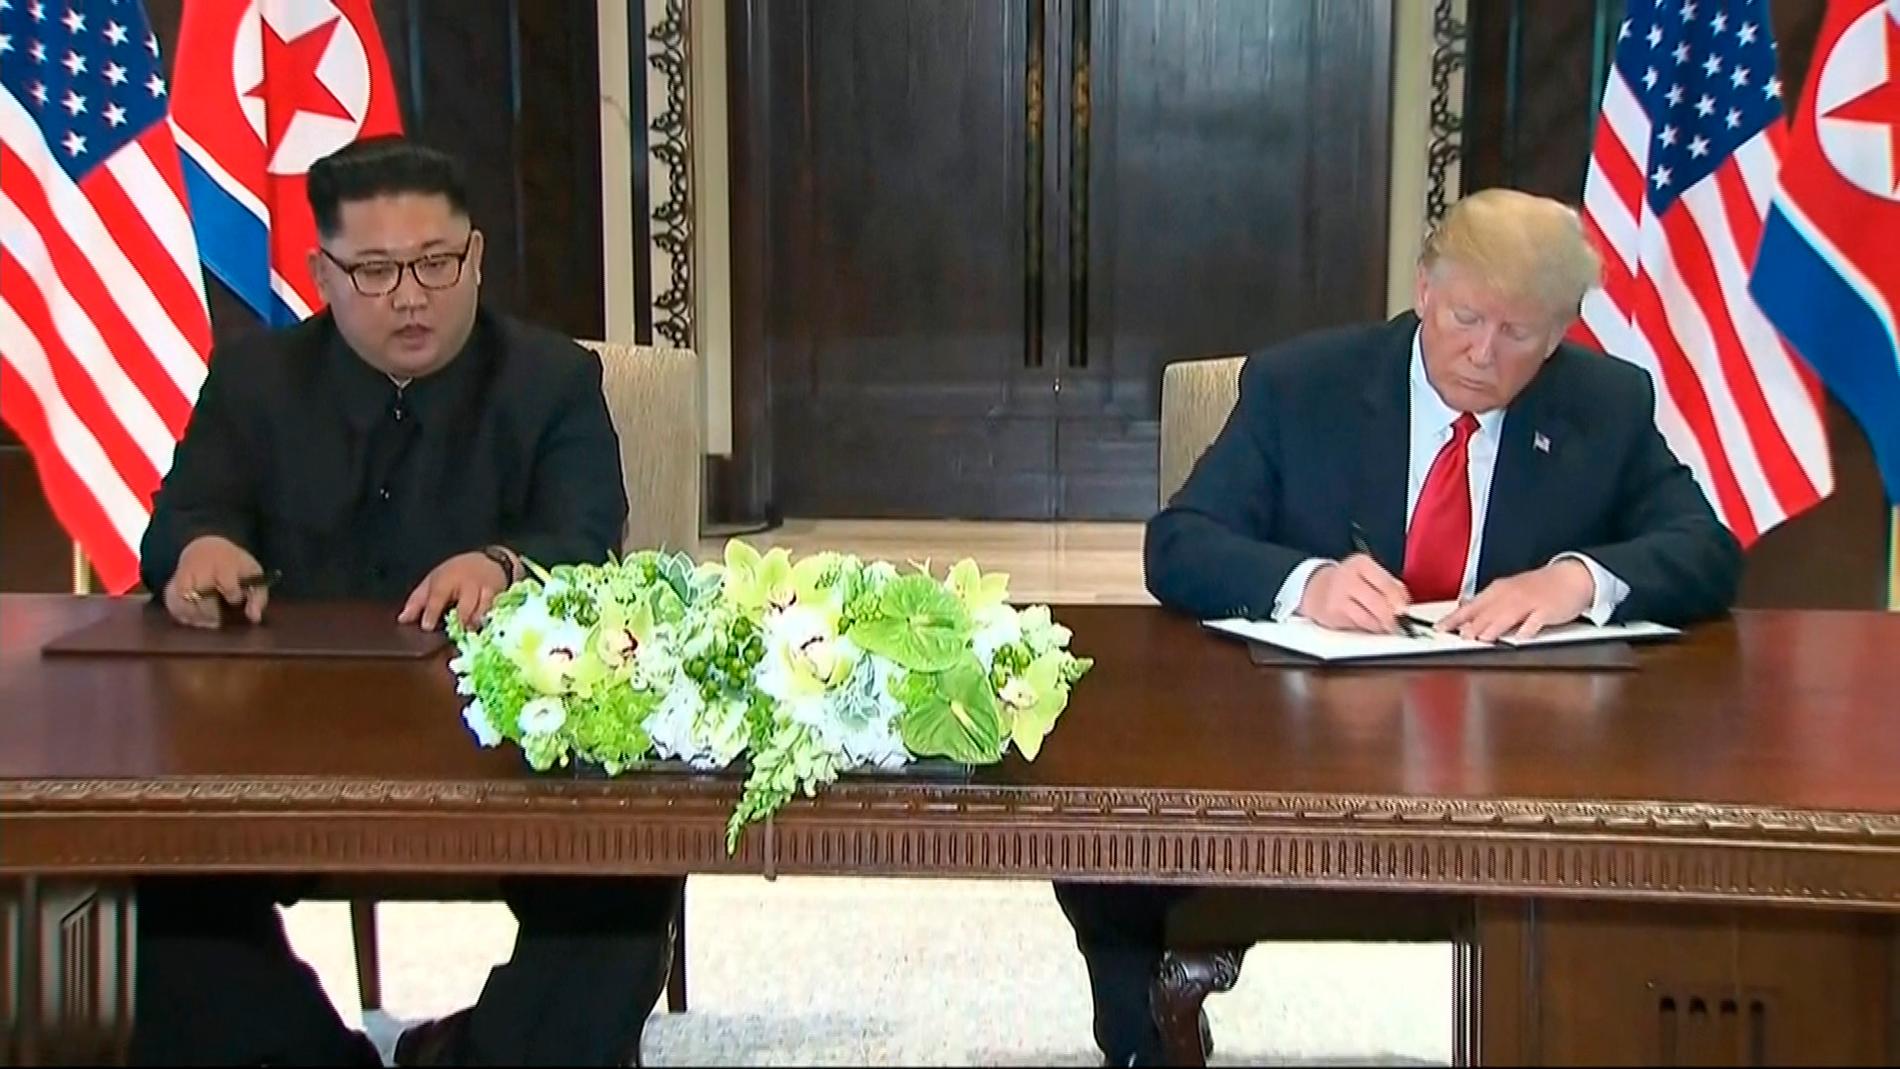 USA:s president Donald Trump och Nordkoreas ledare Kim Jong-Un har skrivit under ett gemensamt uttalande efter sitt historiska möte.